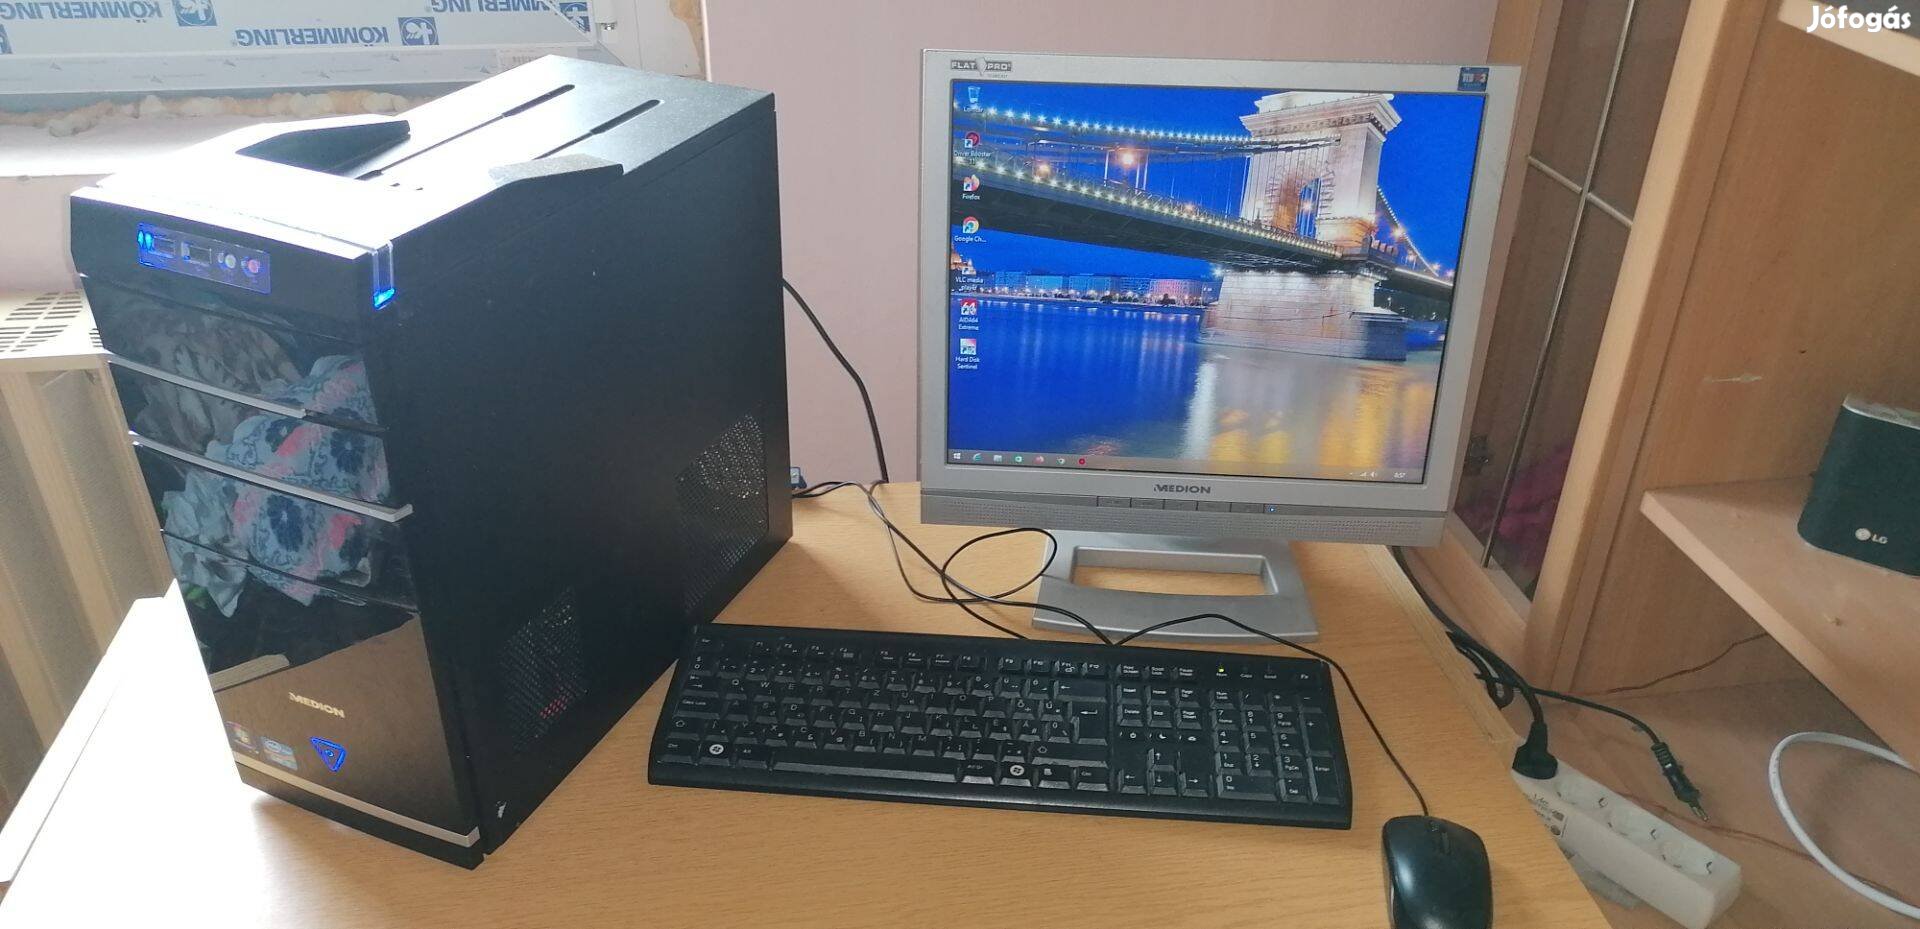 Medion számítógép monitorral